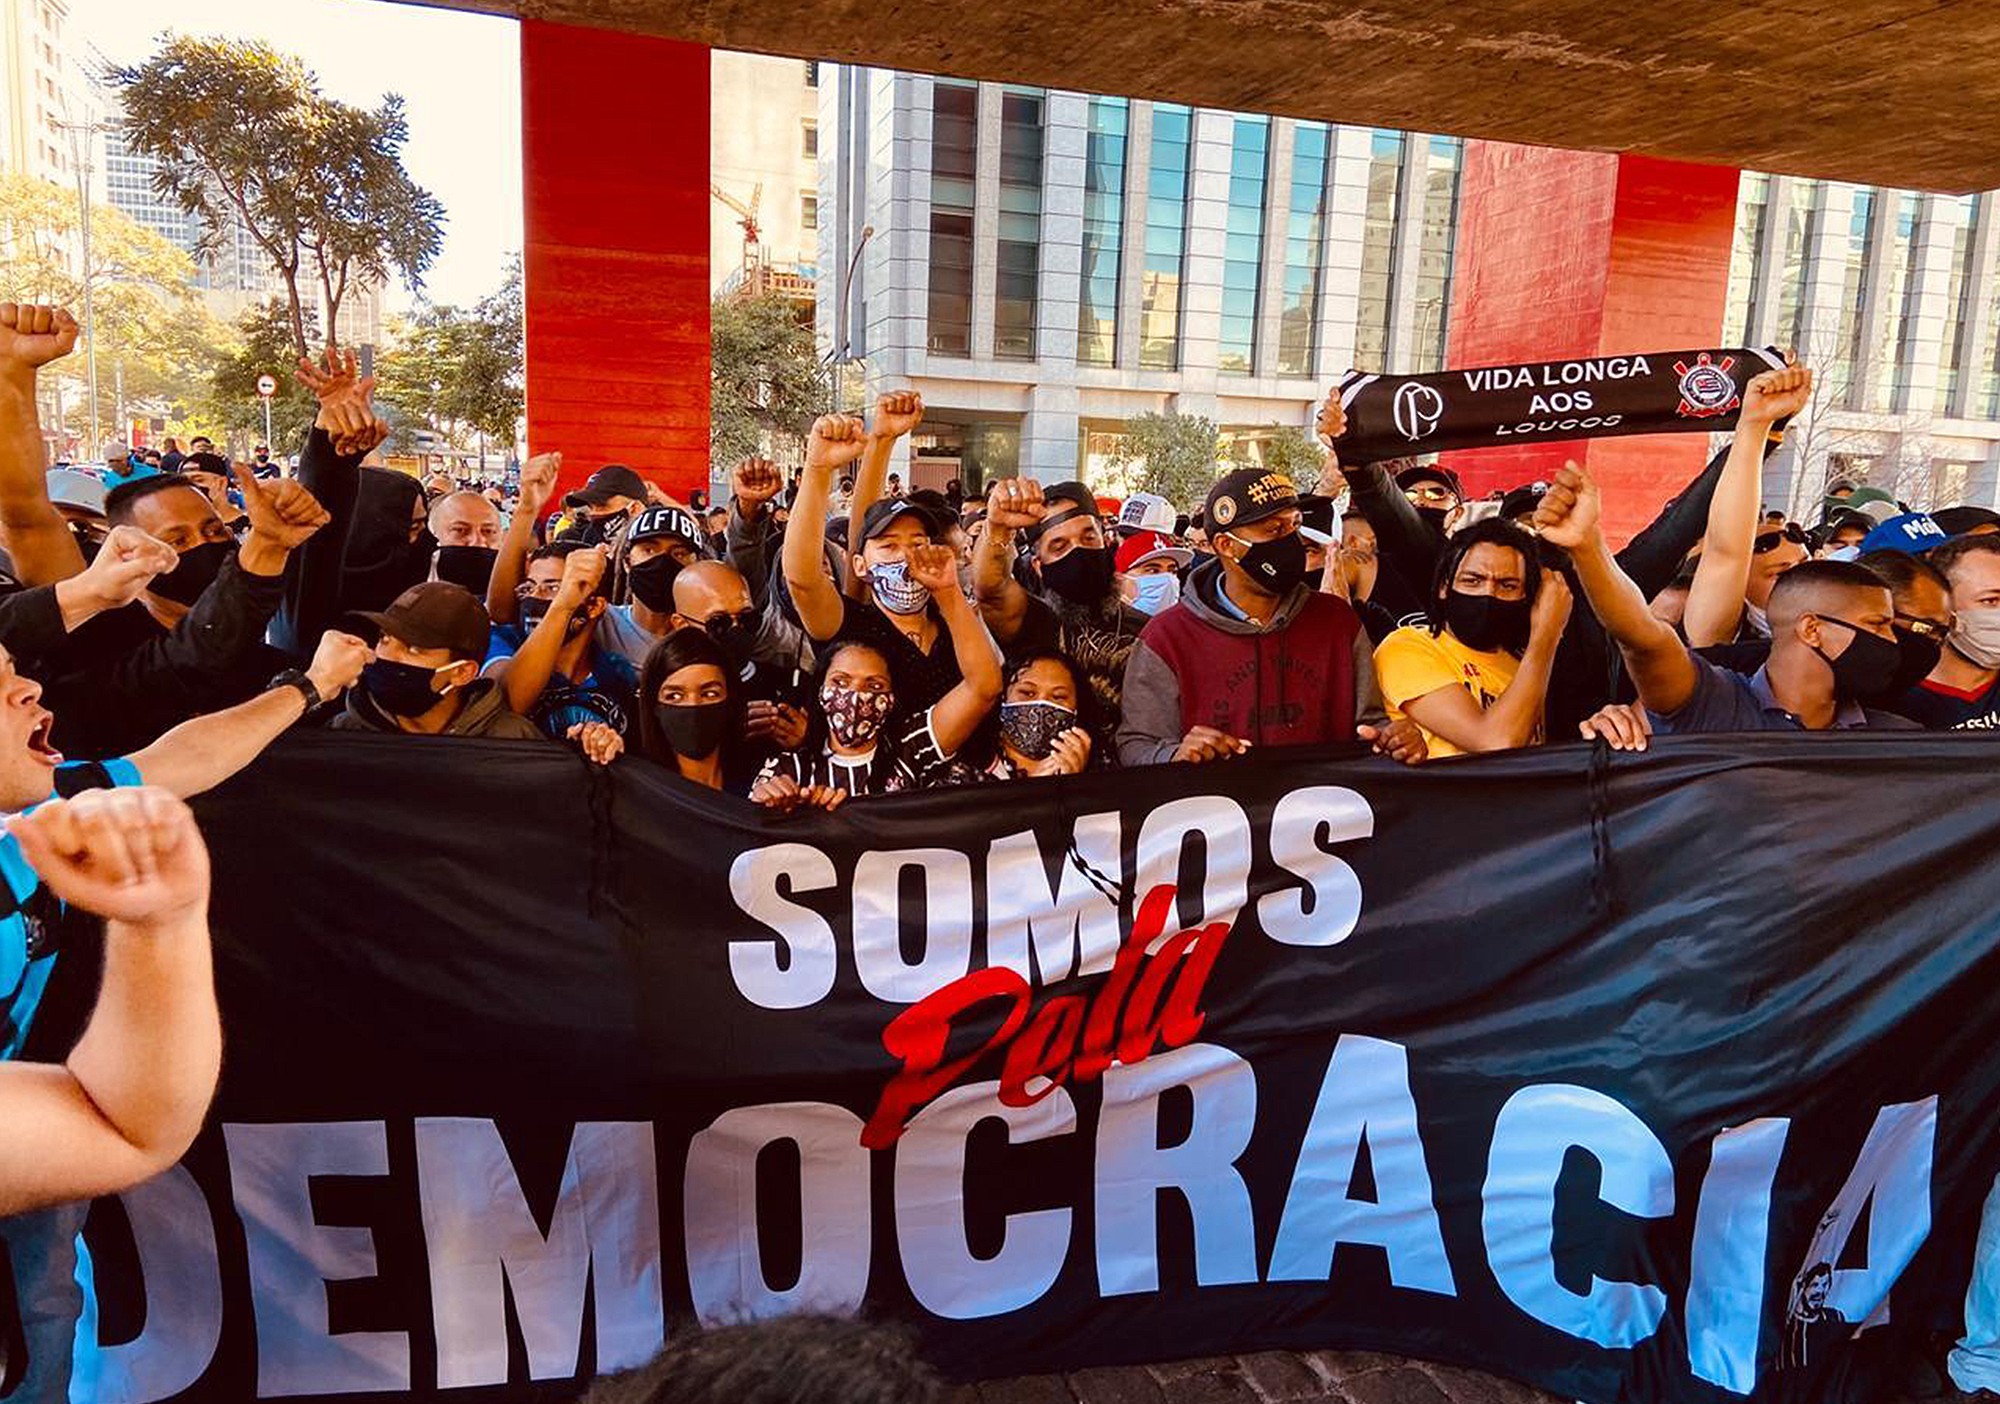 Gol pela democracia: Torcedores em manifestação pela democracia na Av. Paulista, no dia 31 de maio (Foto: Marlene Bergamos/Folhapress)